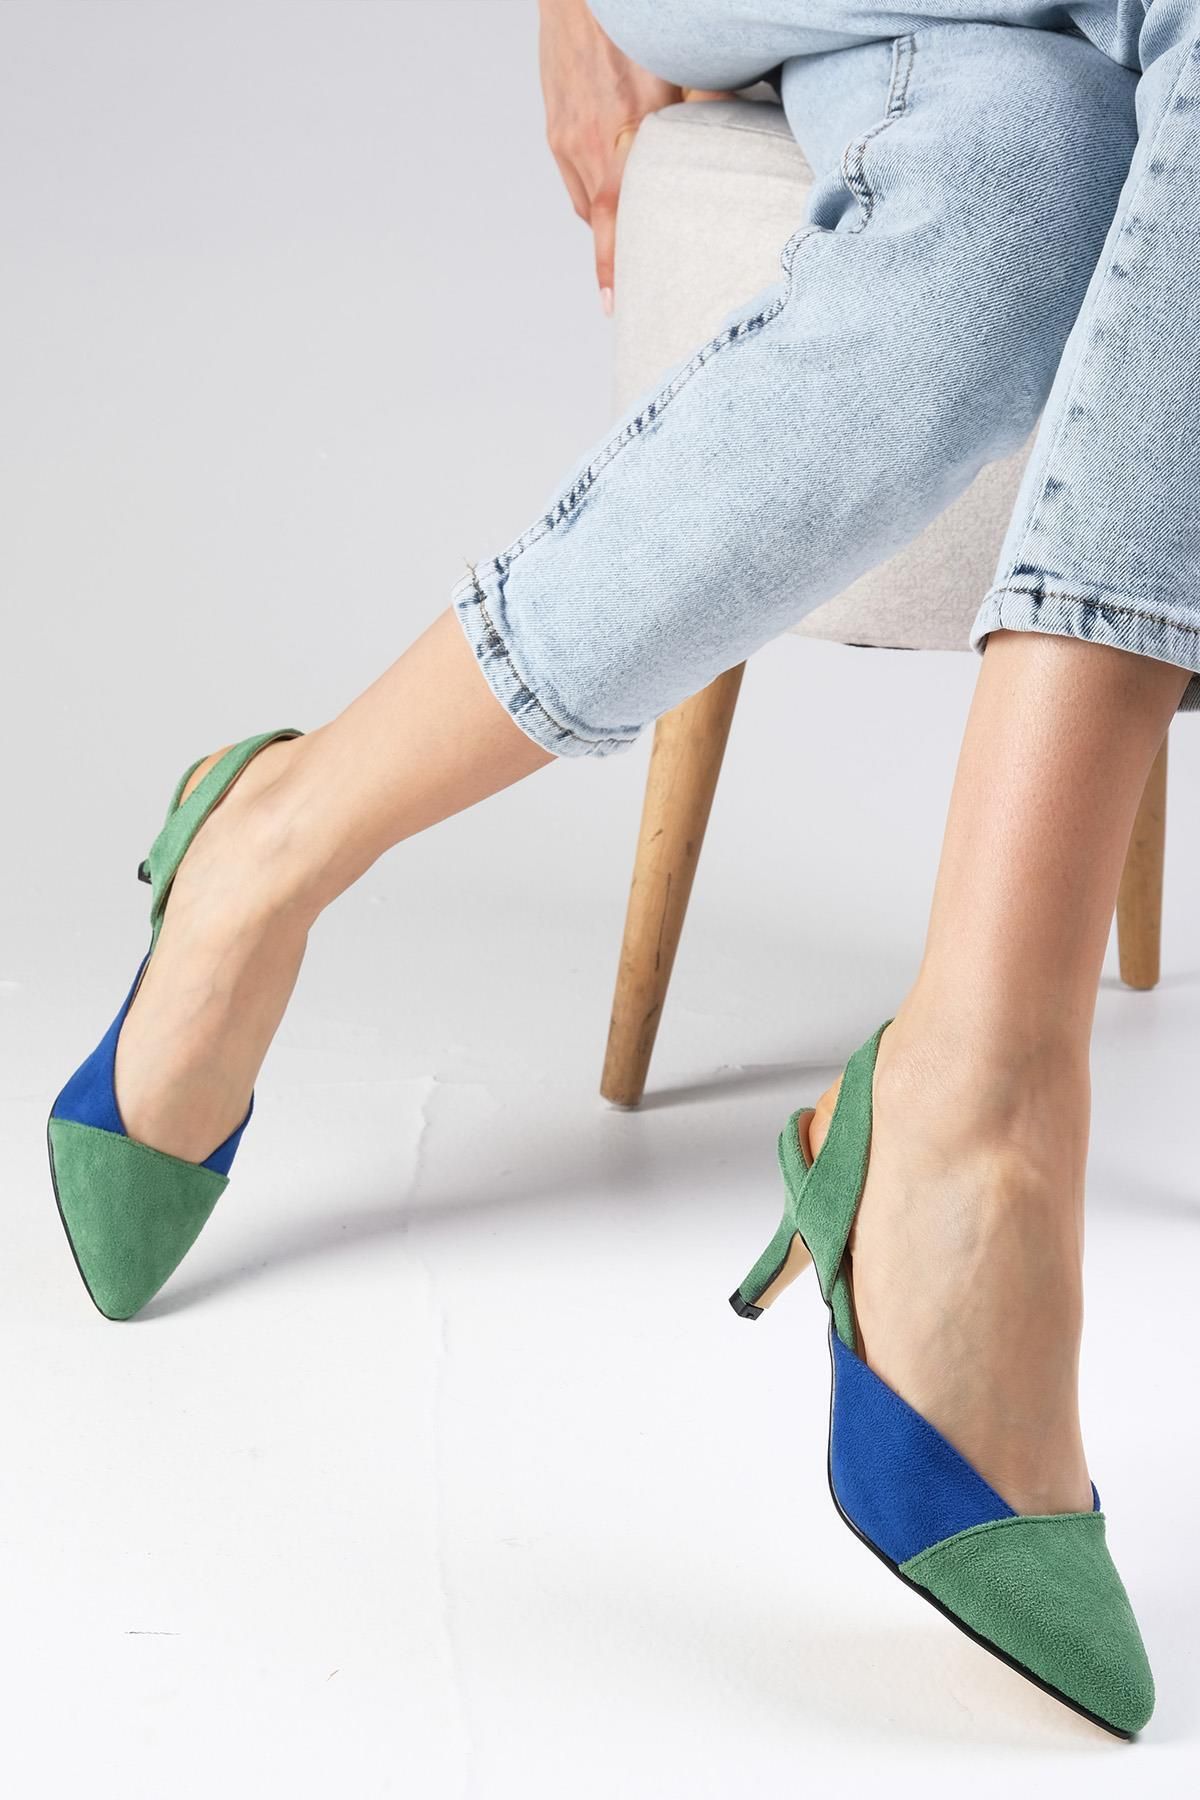 Mio Gusto Ruby Yeşil Ve Saks Mavi Renk Süet Kadın Kısa Topuklu Ayakkabı